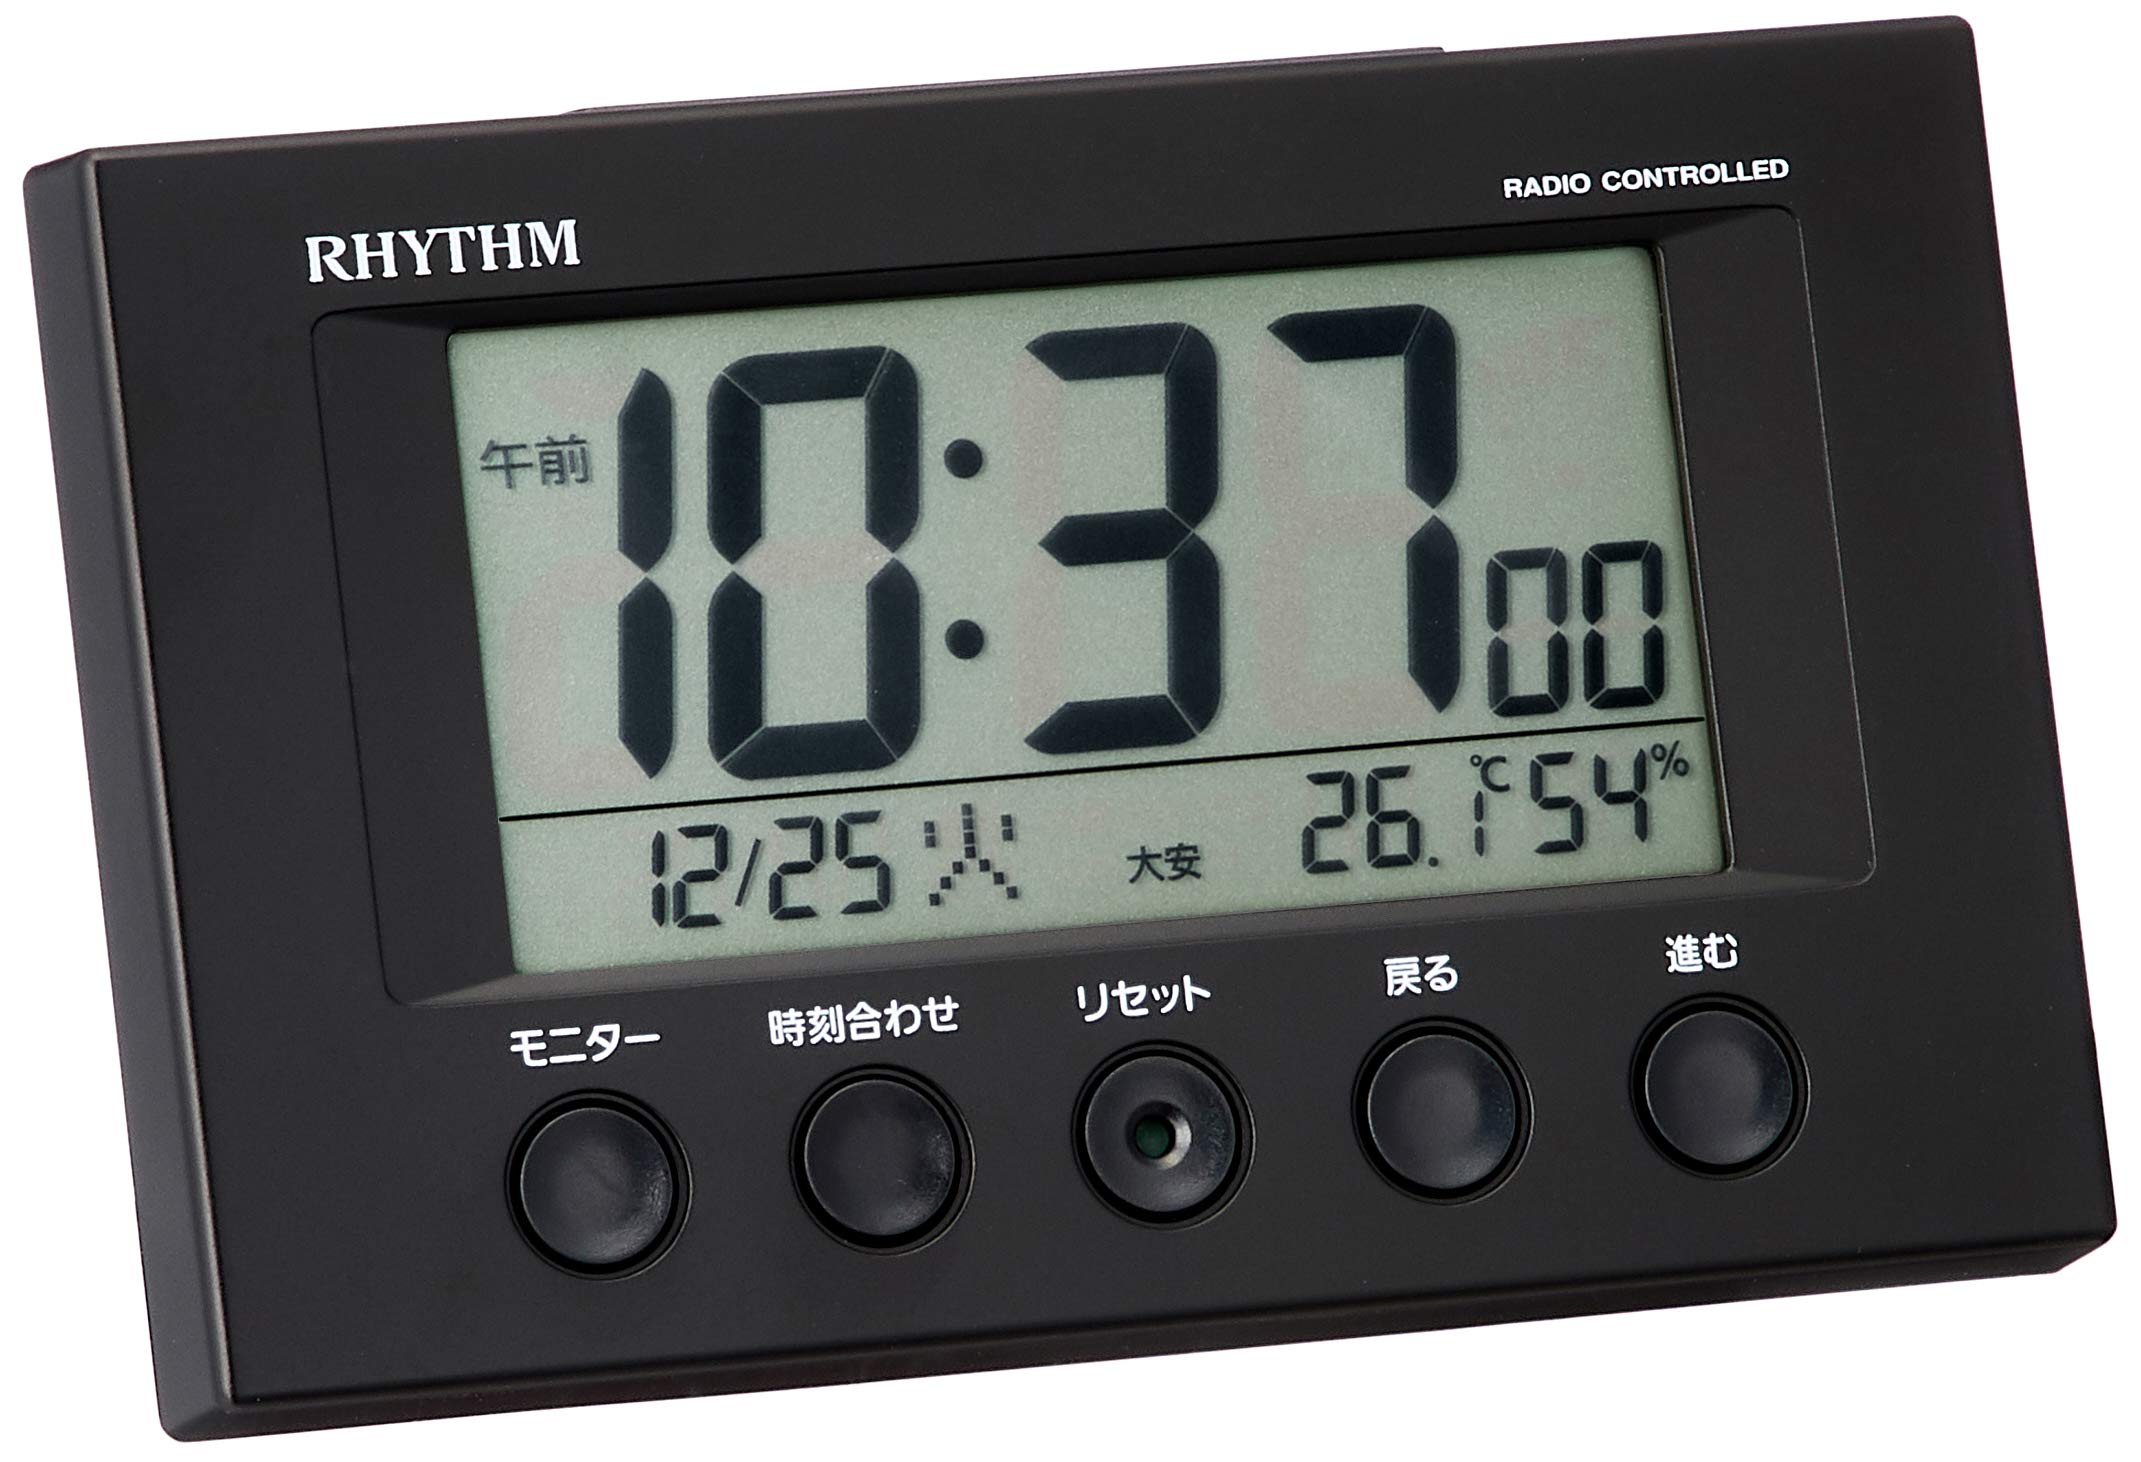 目覚まし時計 電波時計 温度計・湿度計付き フィットウェーブスマート 黒 7.7×12×5.4cm